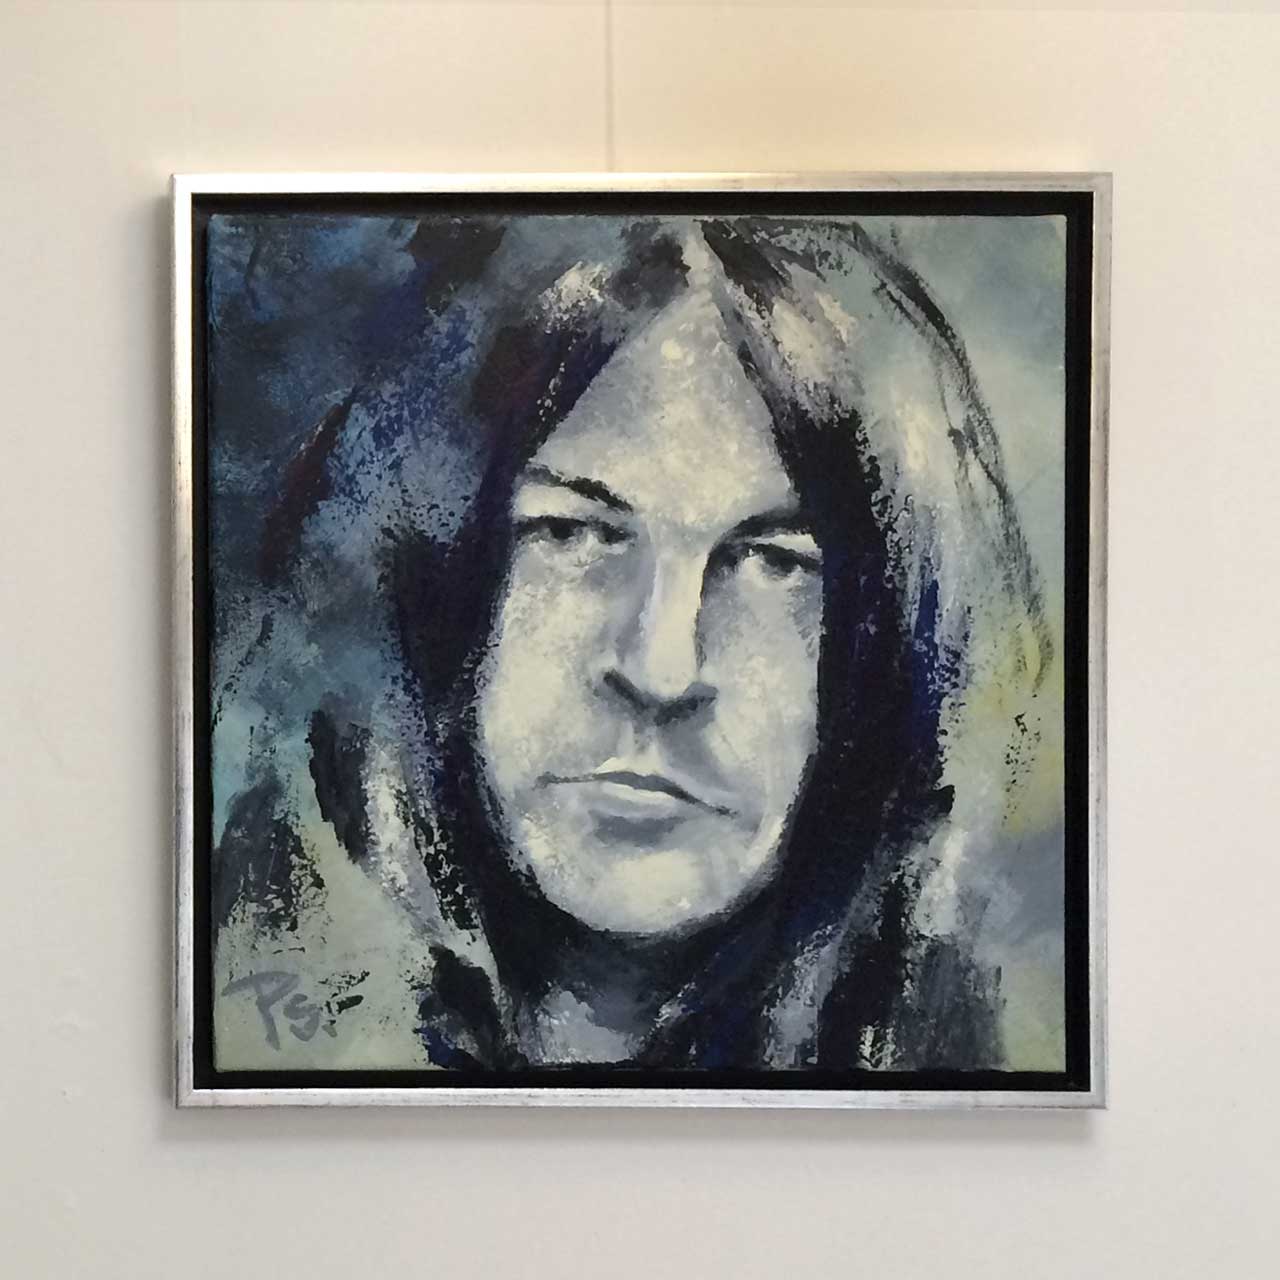 Portrætmaler Peter Simonsens portræt af Ian Gillan, forsanger i bandet Deep Purple